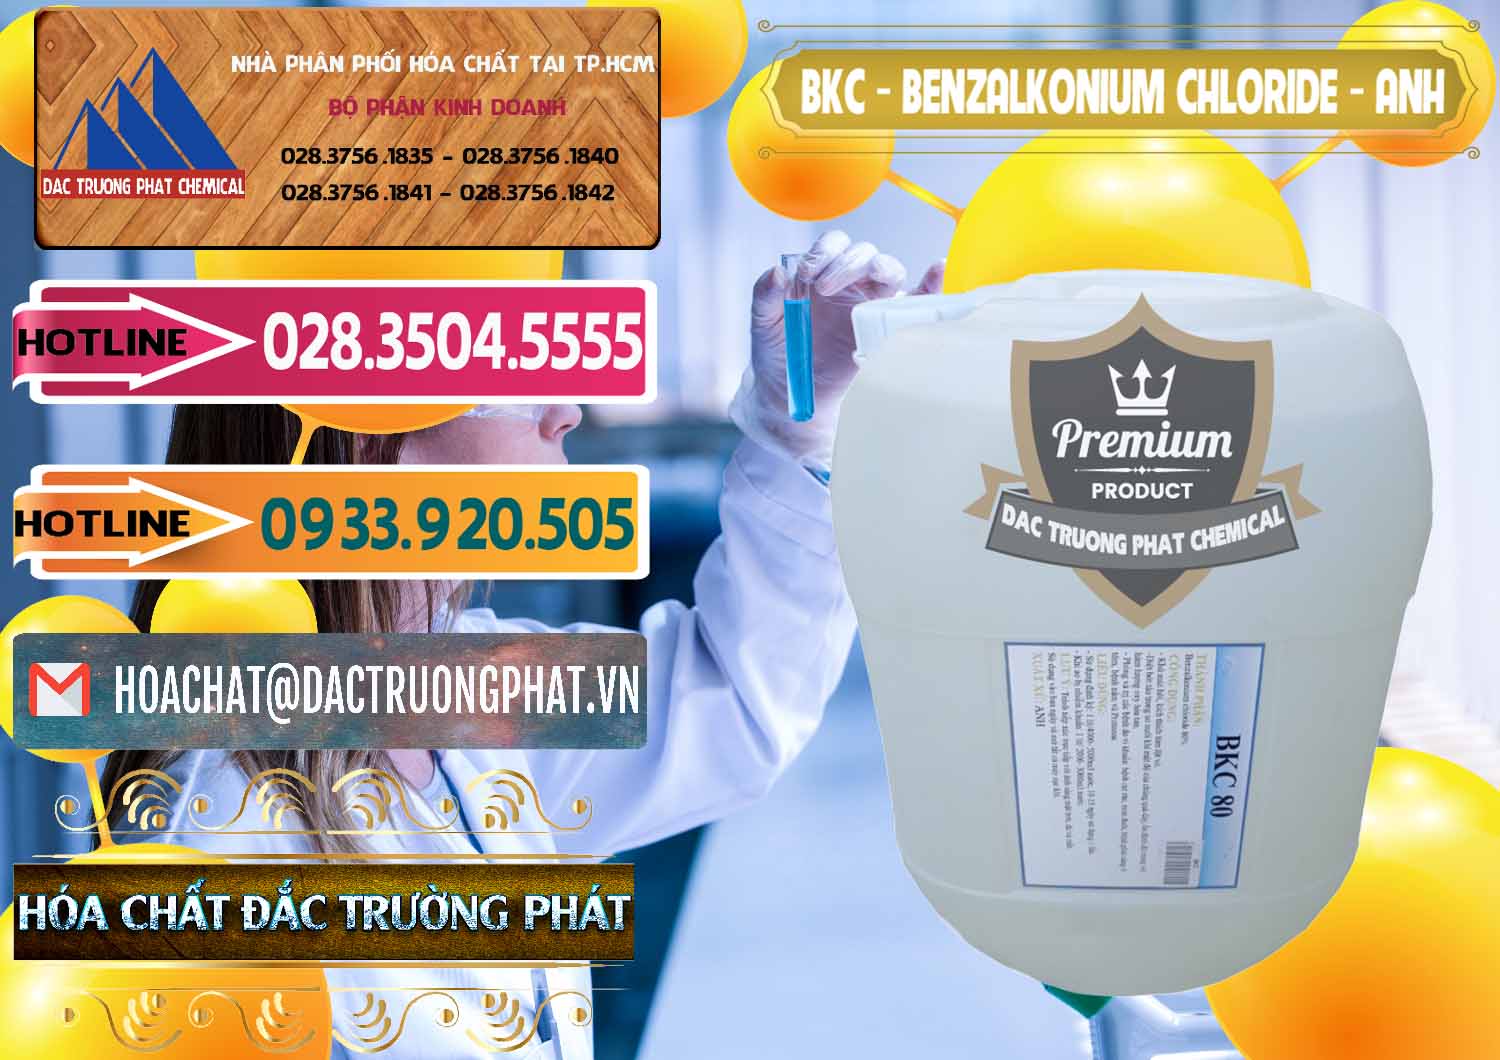 Nơi chuyên bán _ phân phối BKC - Benzalkonium Chloride Anh Quốc Uk Kingdoms - 0415 - Đơn vị chuyên cung cấp ( nhập khẩu ) hóa chất tại TP.HCM - dactruongphat.vn